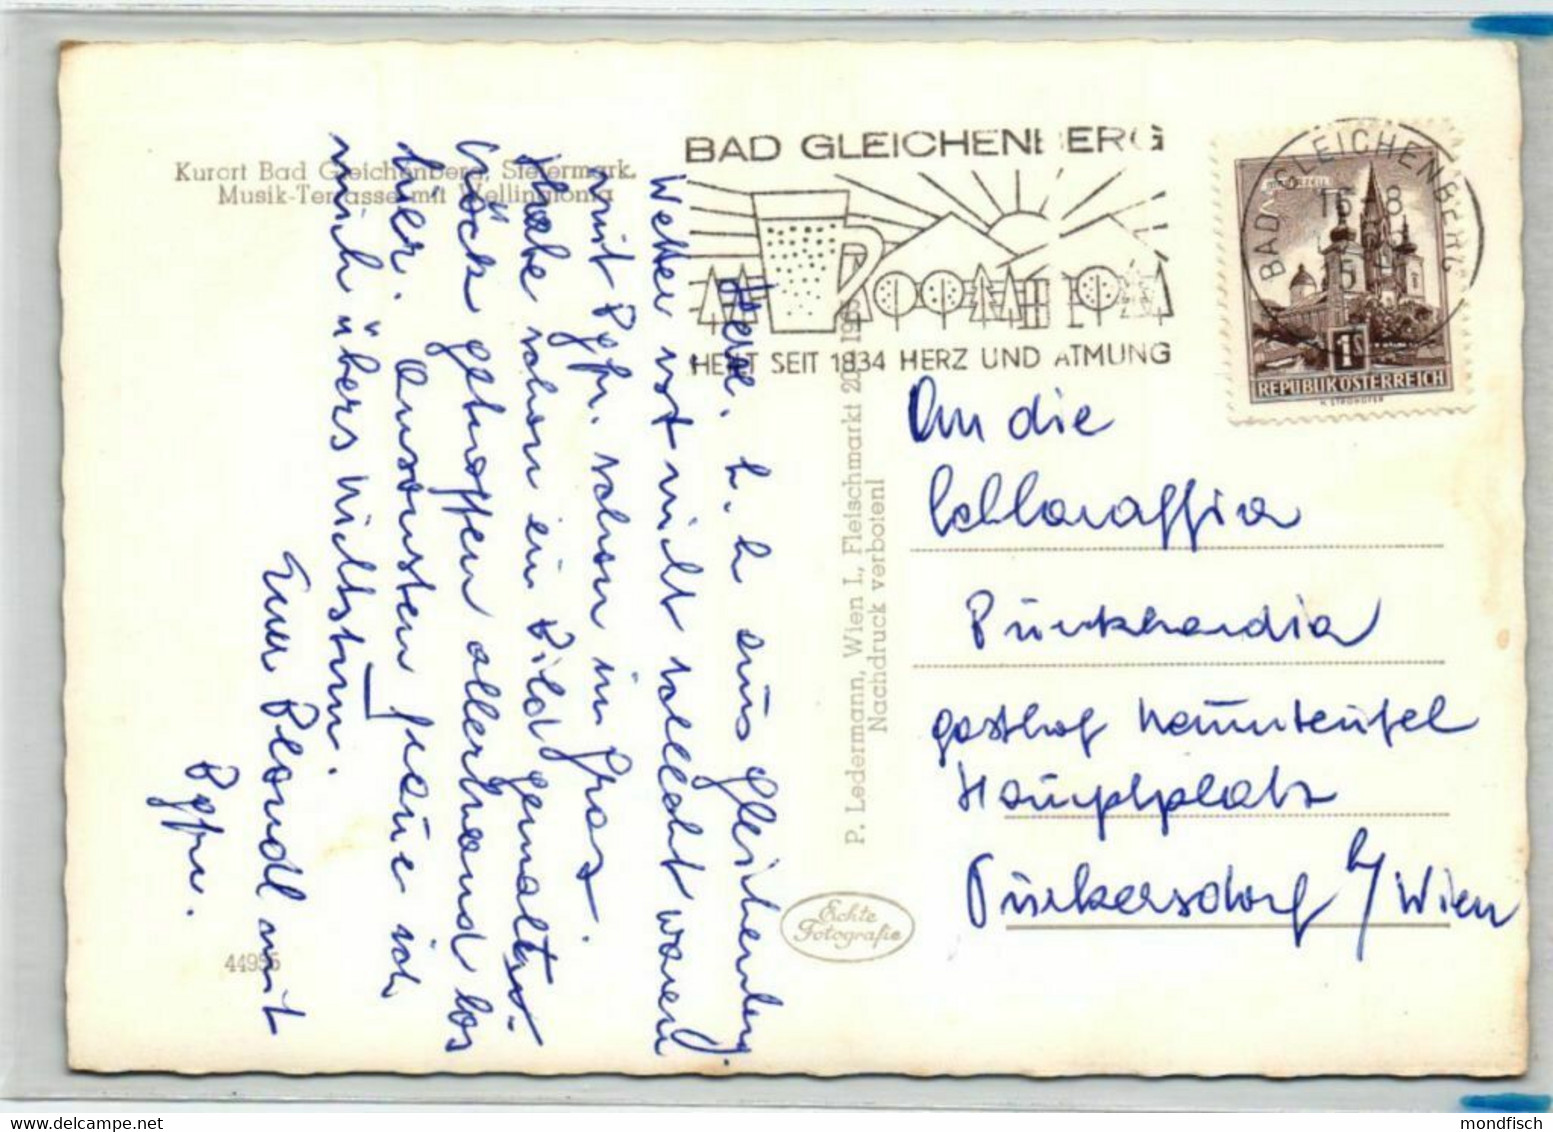 Bad Gleichenberg 1964 - Musik Terrasse Mit Mammutbaum Wellingtonia - Bad Gleichenberg